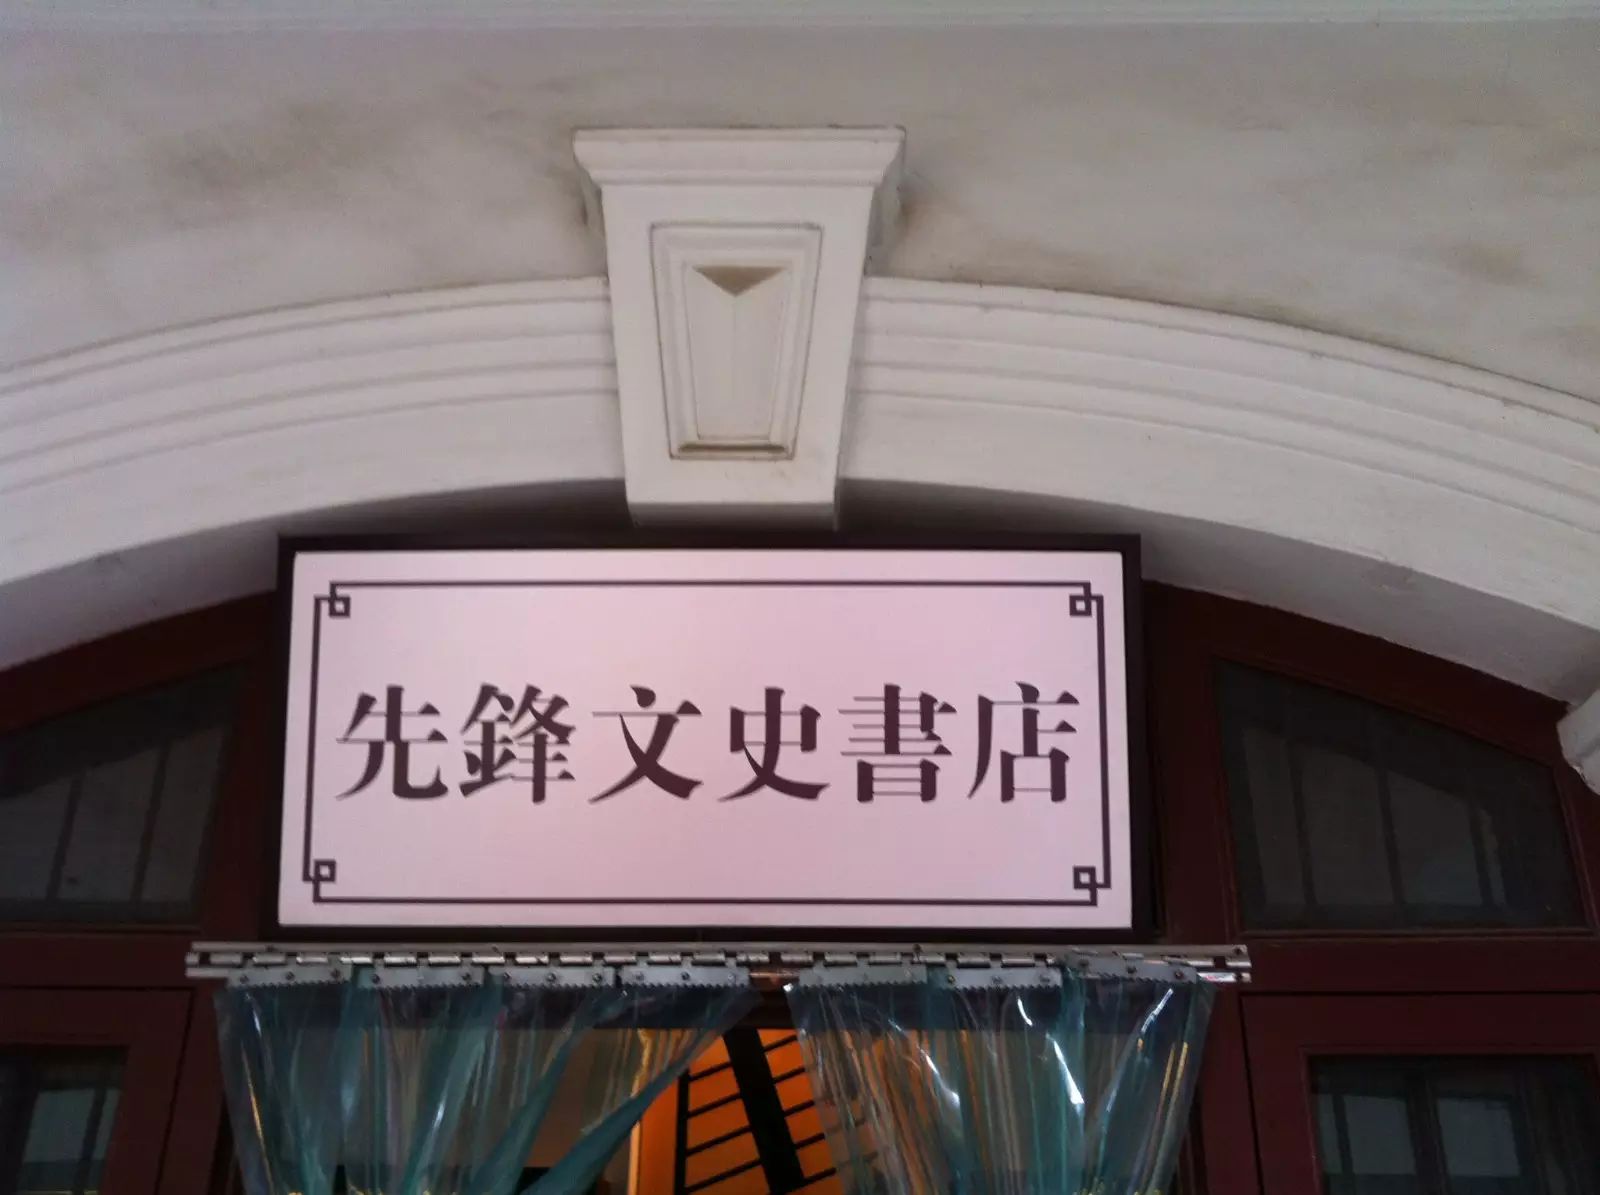 南京 亲子酒店_南京亲子_南京亲子主题餐厅